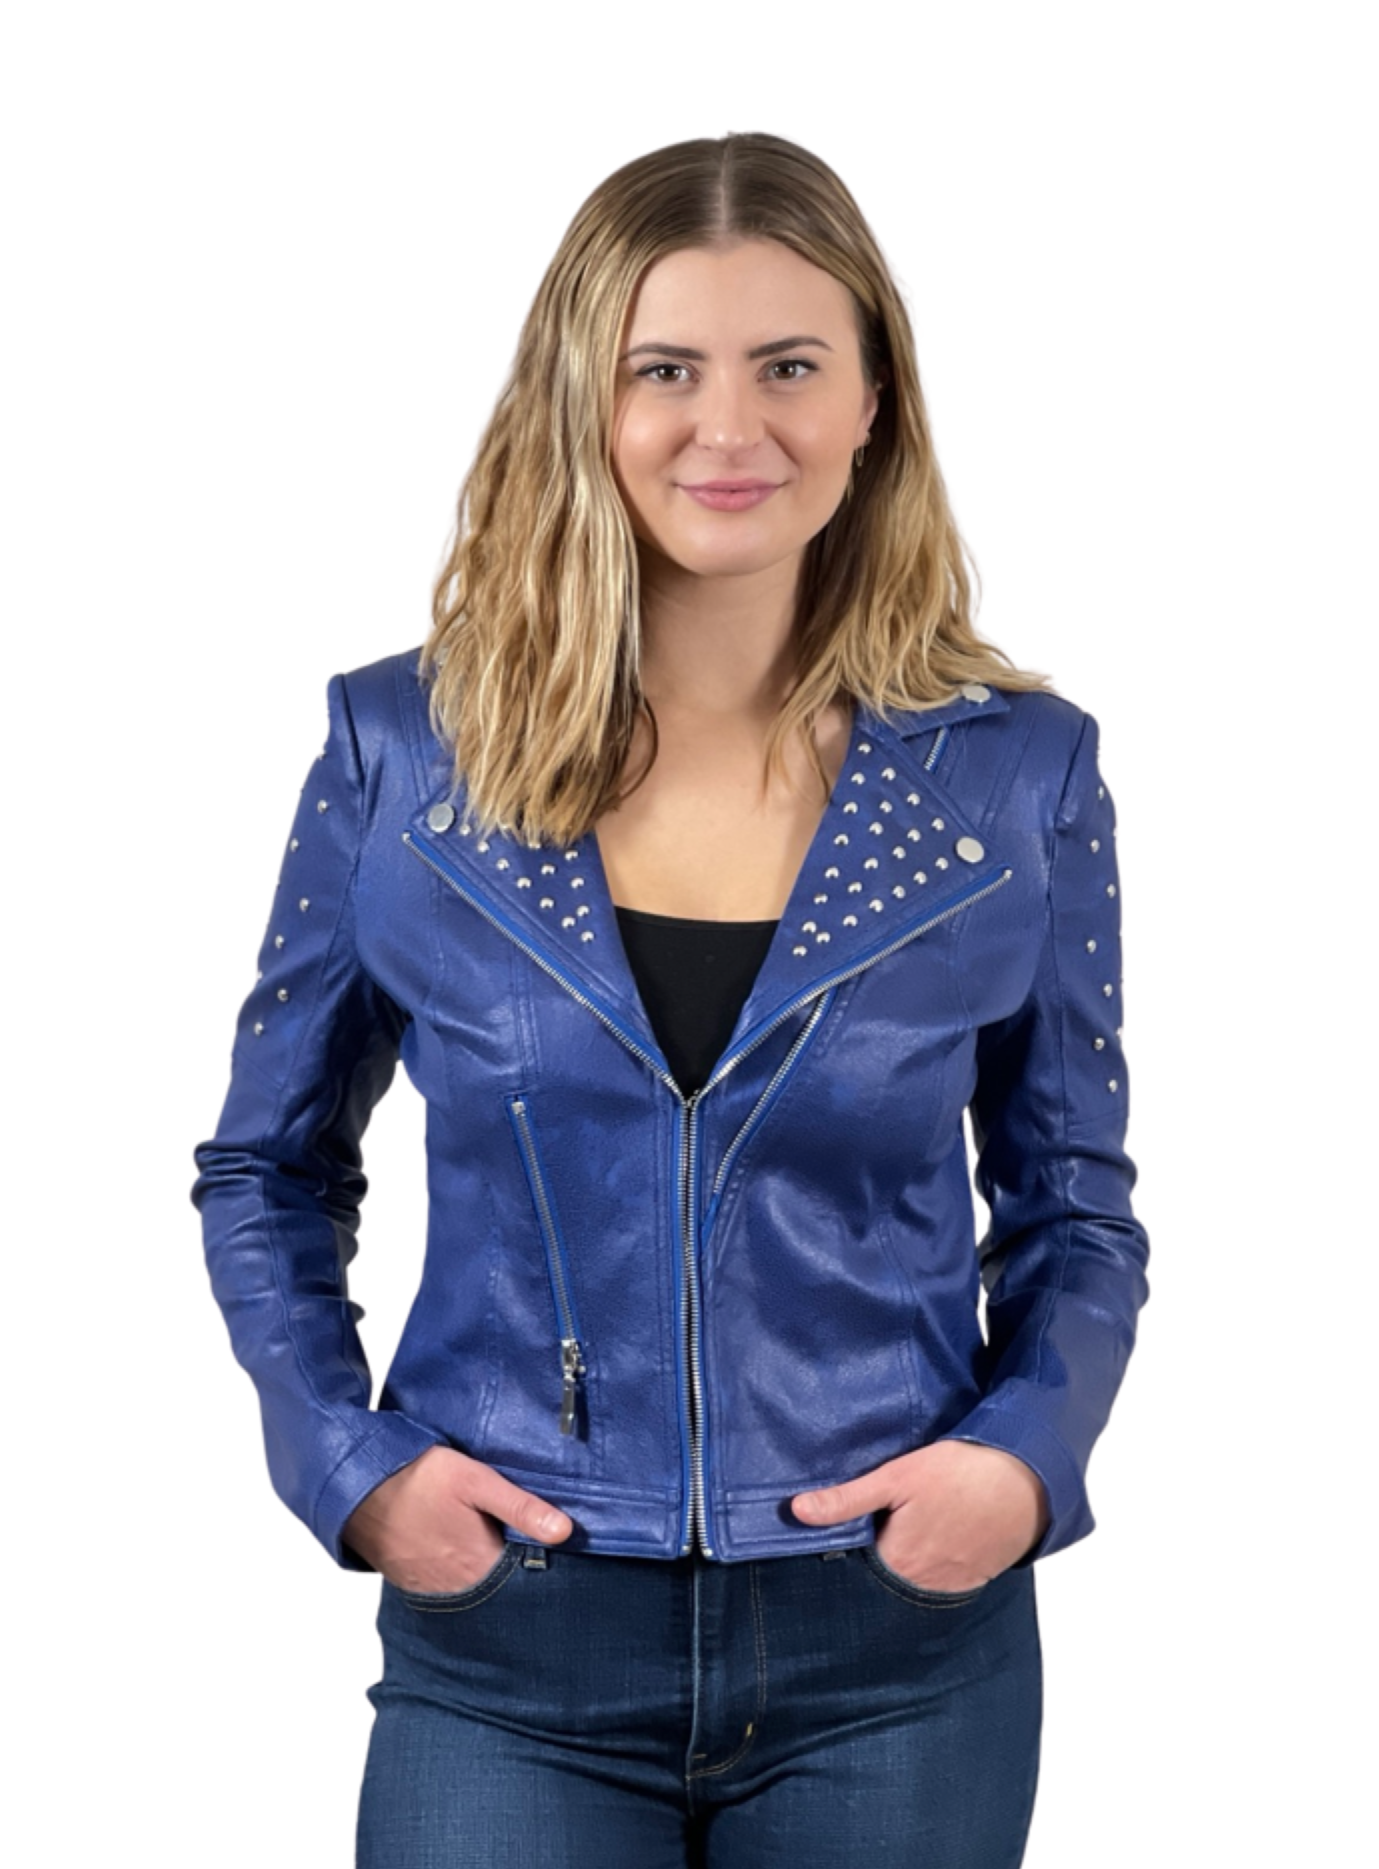 Foil Faux Leather jacket with rivets trim (Royal blue)